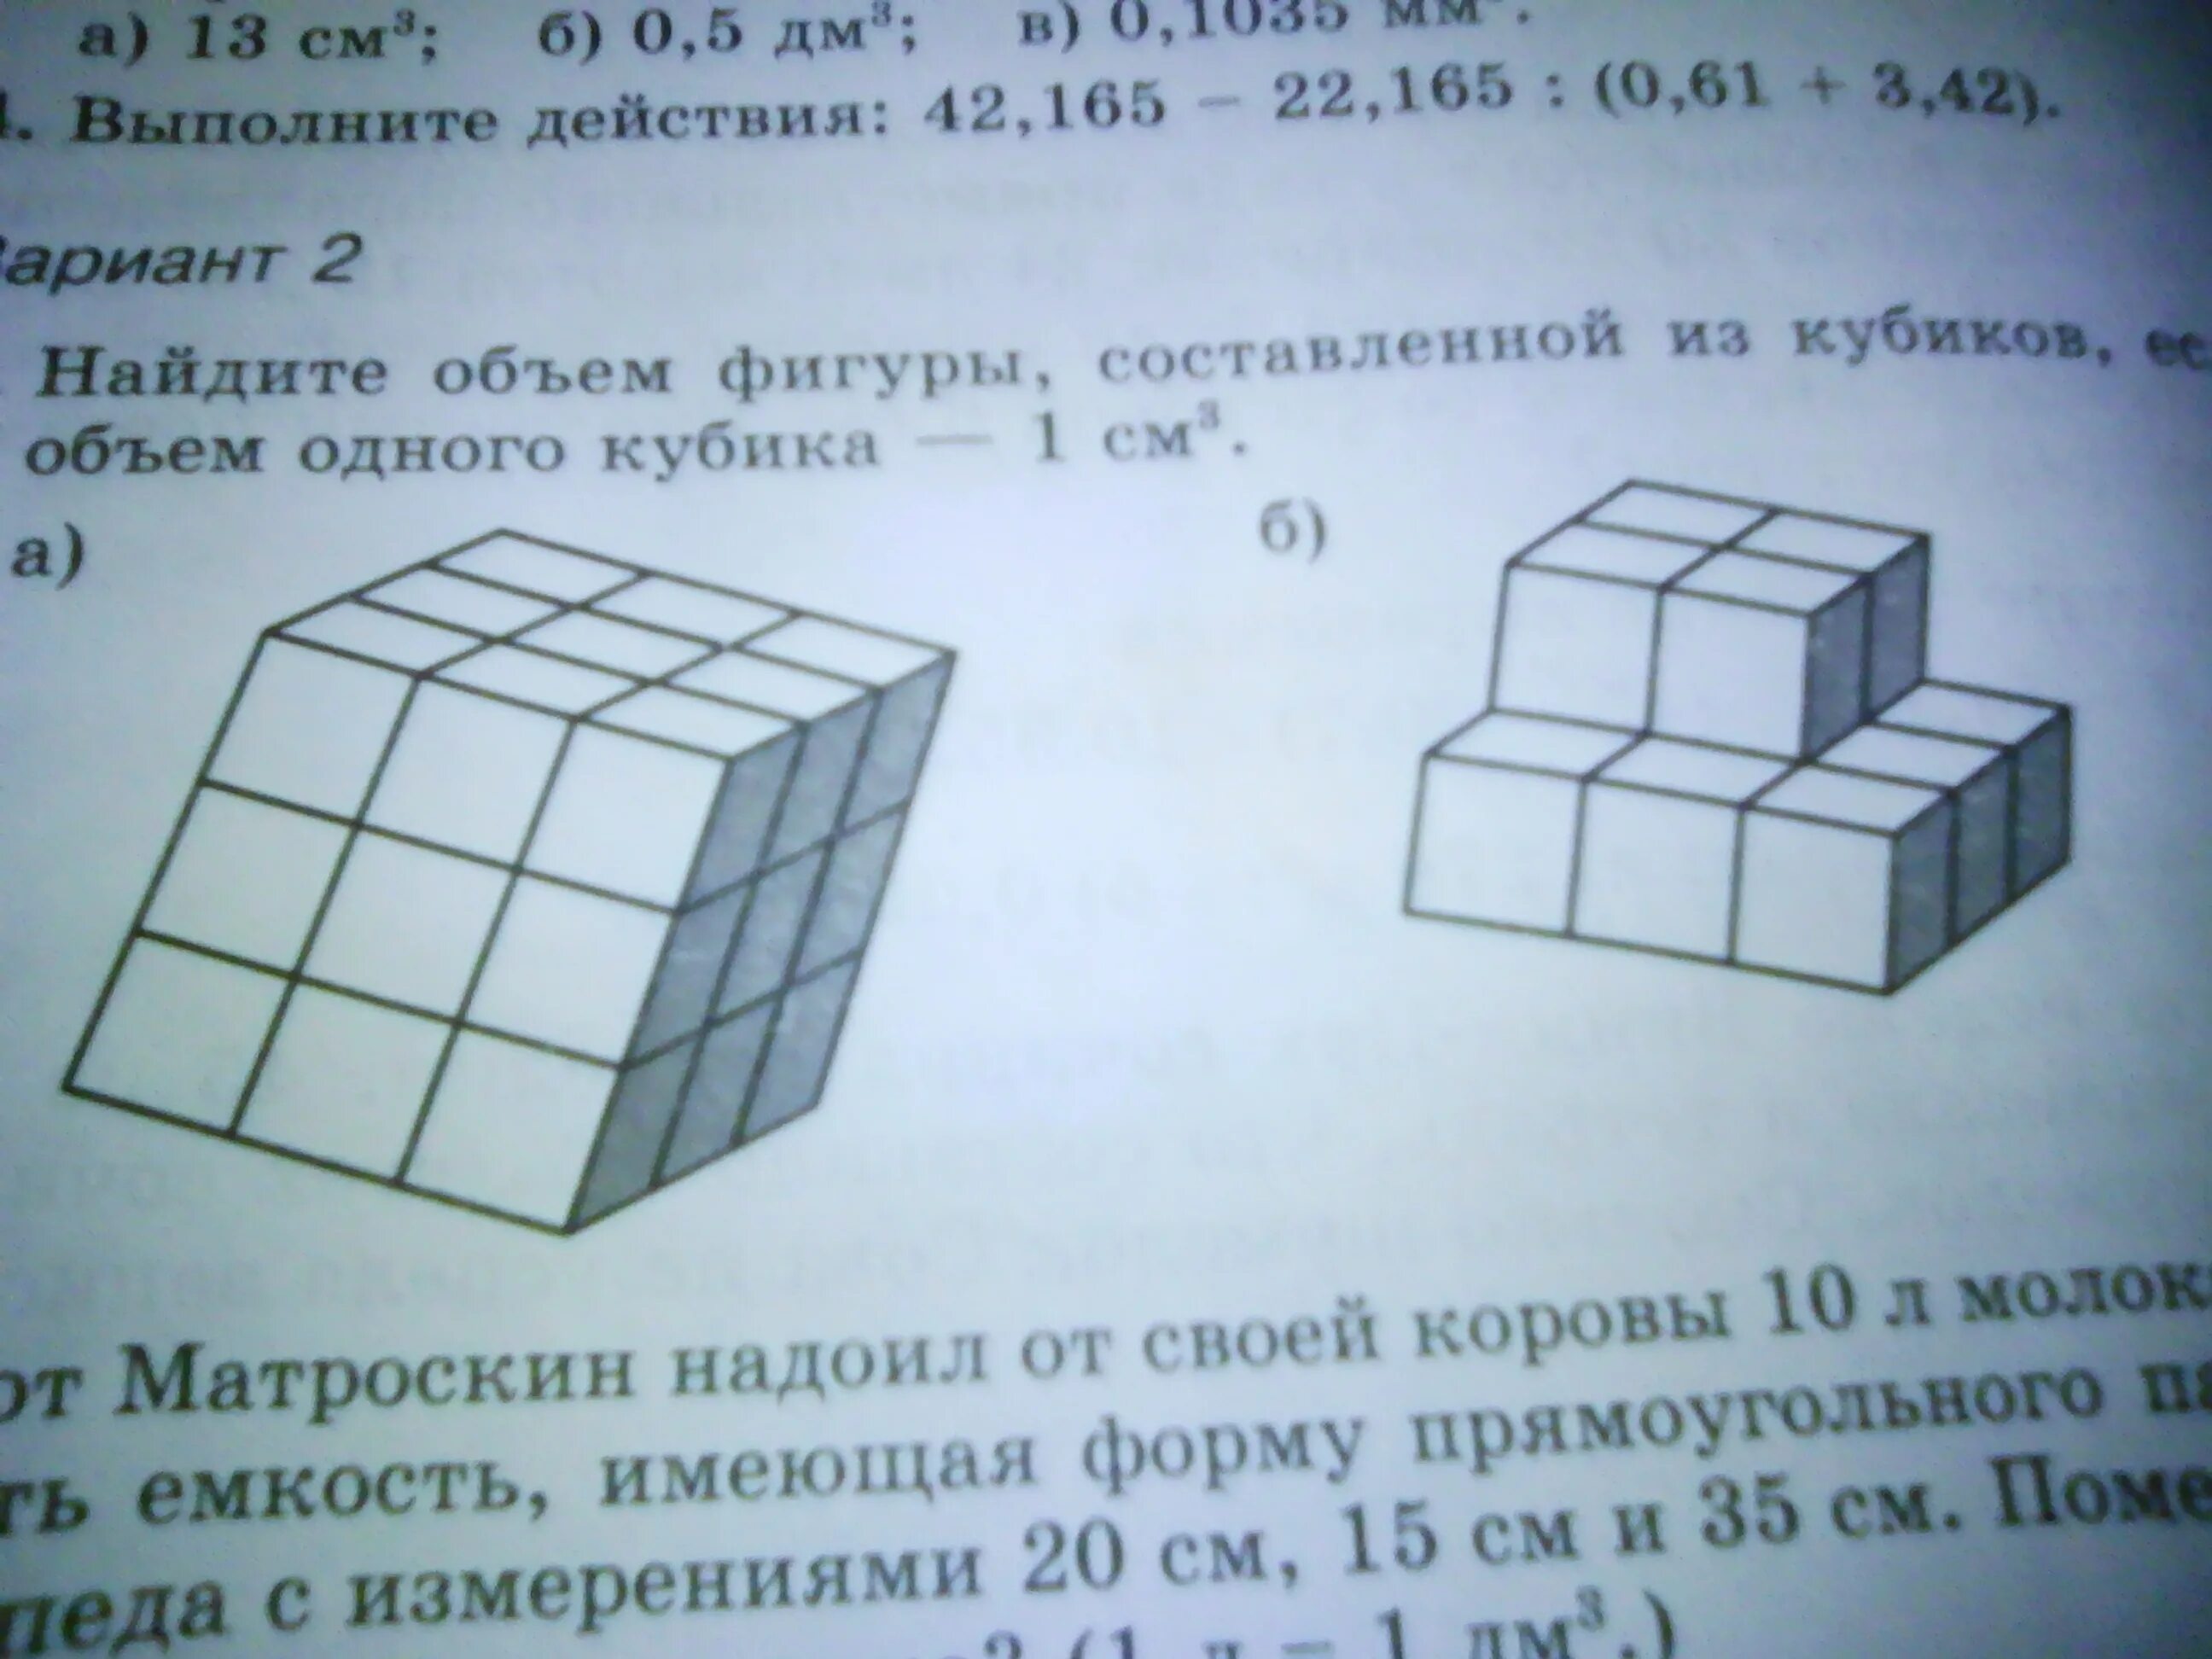 Сколько кубиков осталось в фигуре. Найти объем фигуры. Объем фигуры в кубиках. Объем фигур из кубиков. Найти объем фигуры составленной из кубиков.